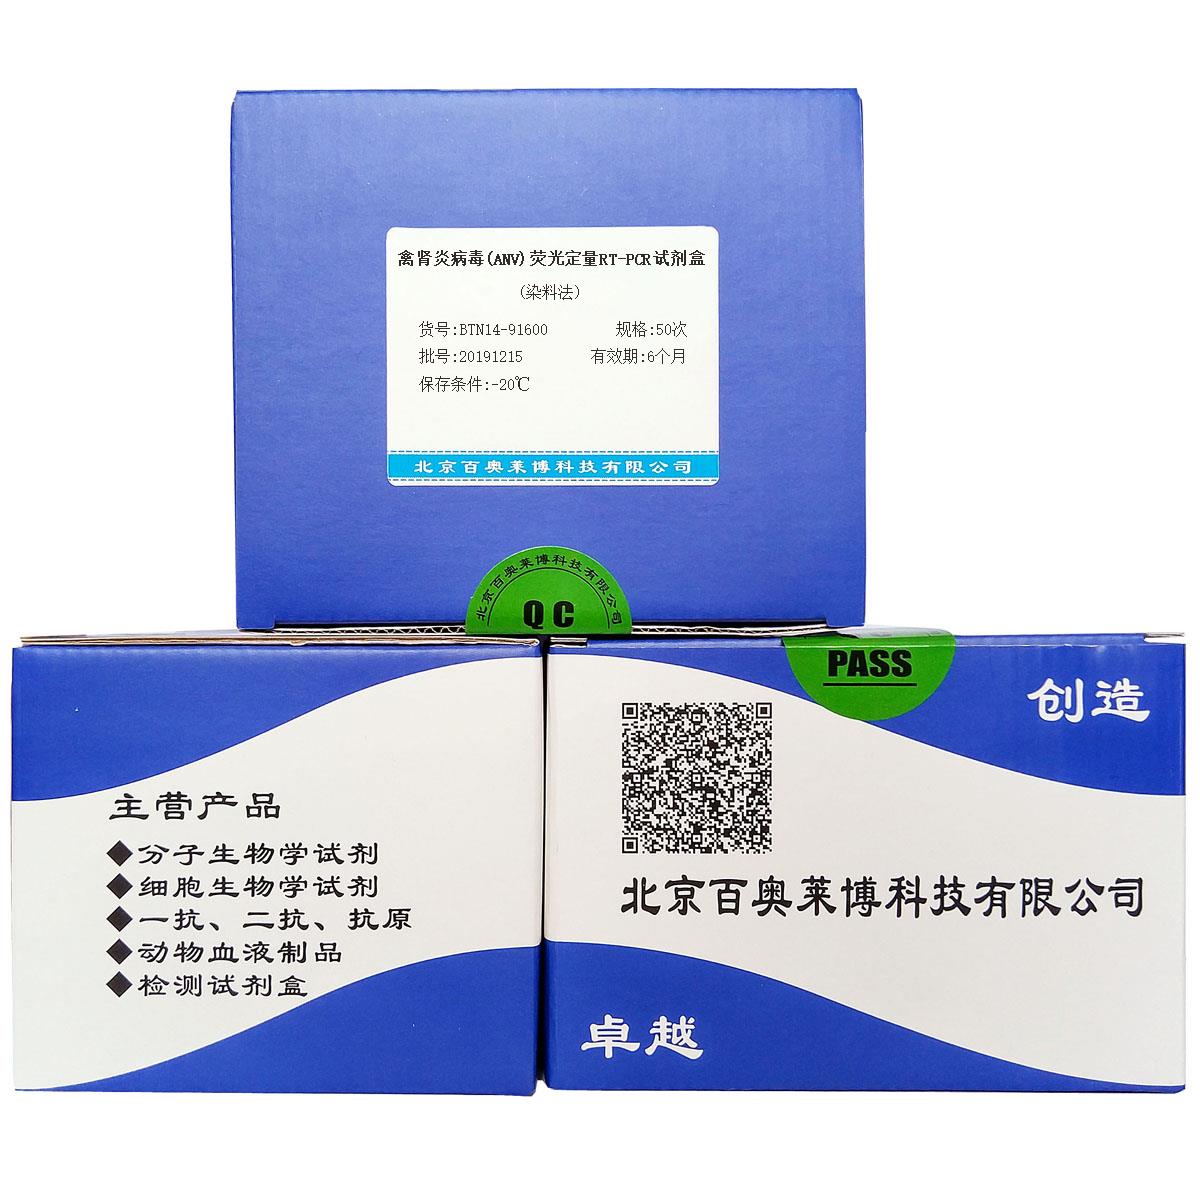 禽肾炎病毒(ANV)荧光定量RT-PCR试剂盒(染料法)